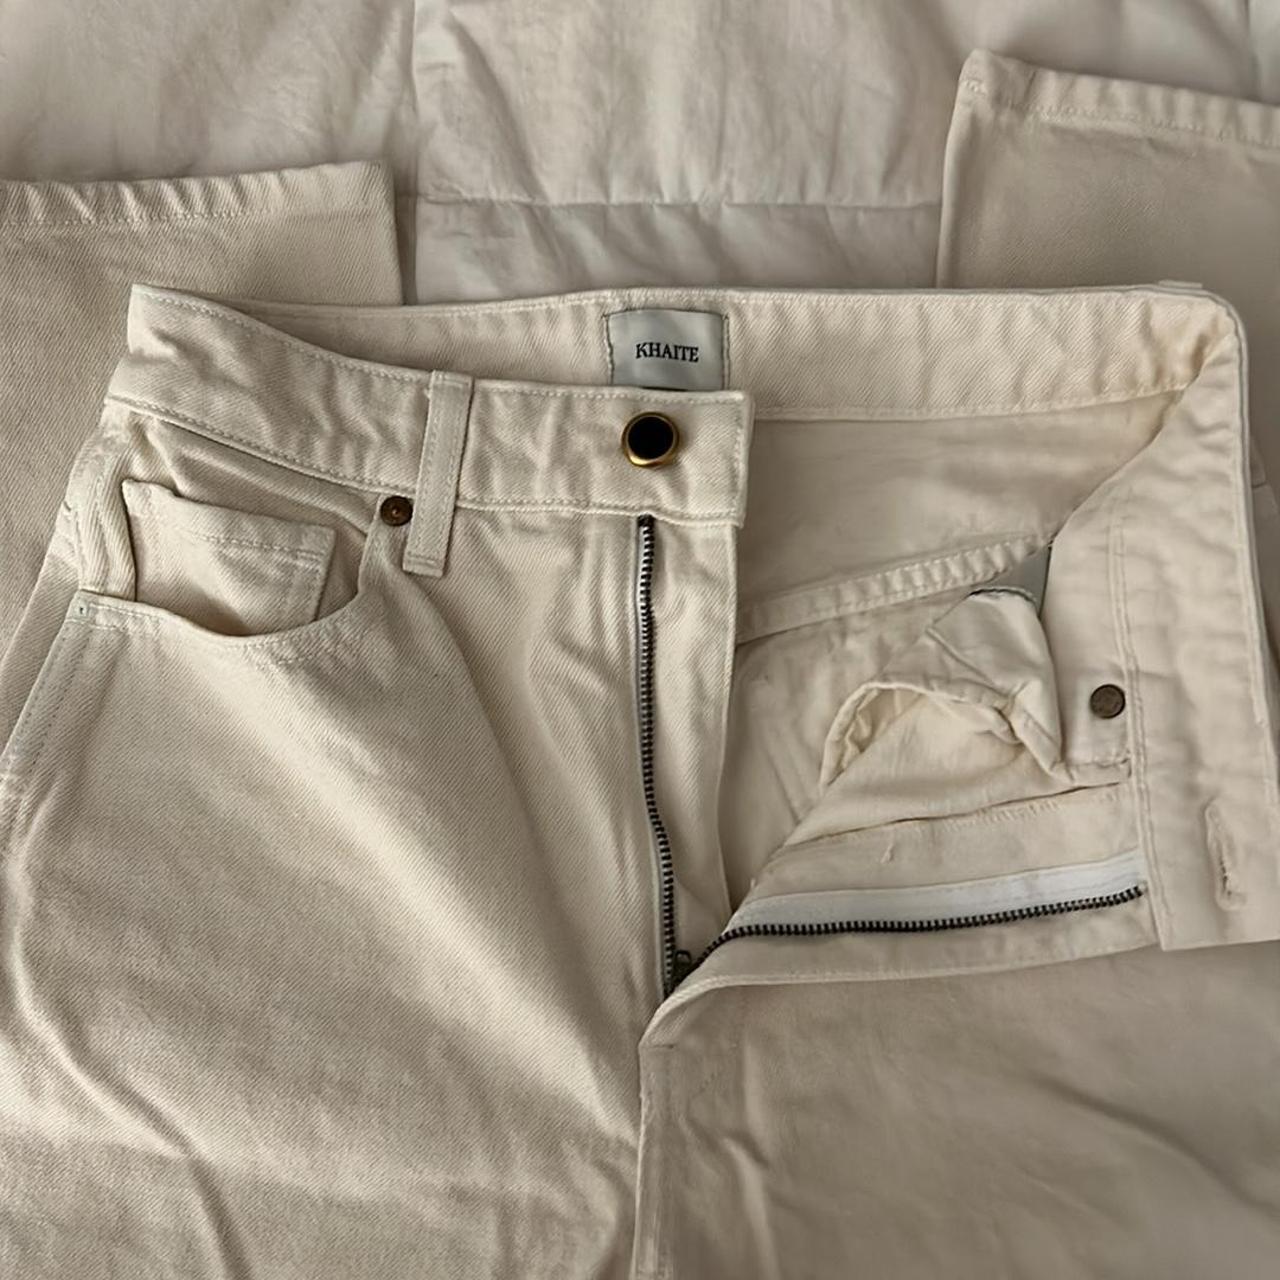 Khaite Gabbie jeans - size 26 Great condition! No... - Depop